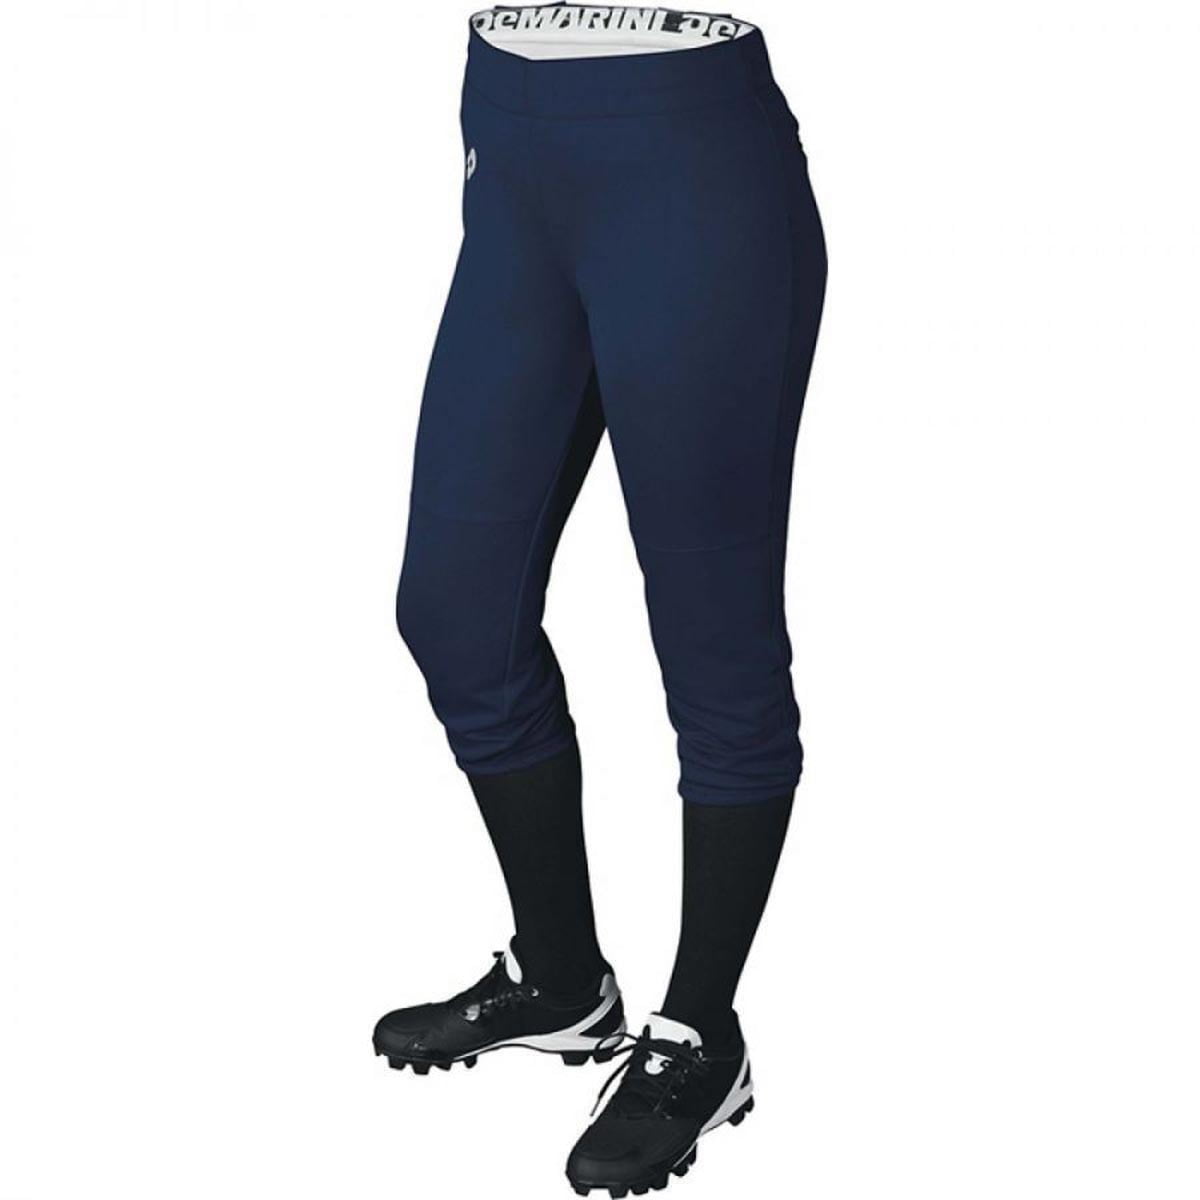 DeMarini Women's Sleek Softball Pant 